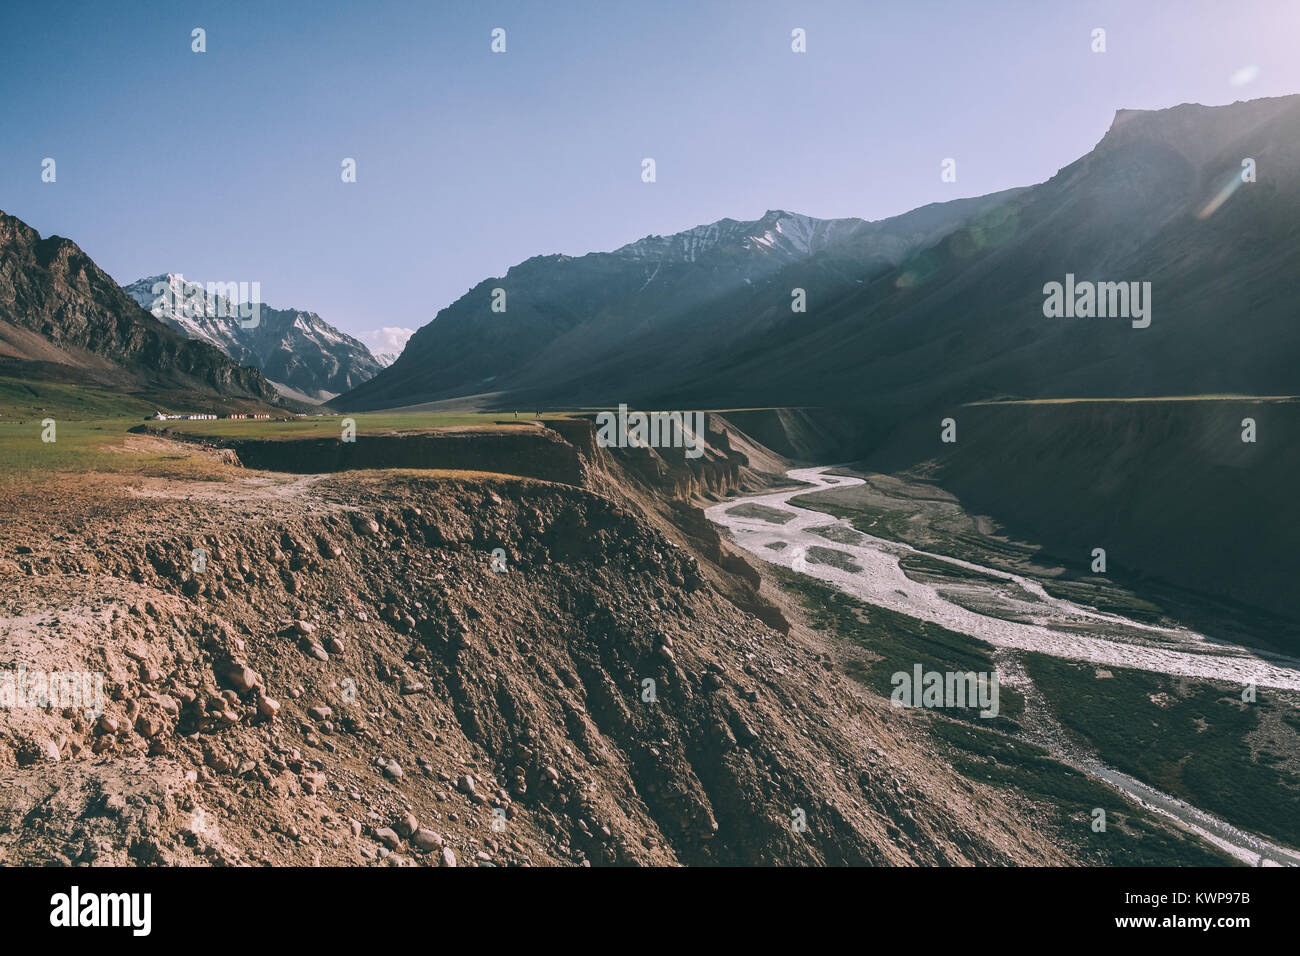 Belle vallée montagneuse avec river dans la région de Ladakh, Himalaya Indien Banque D'Images